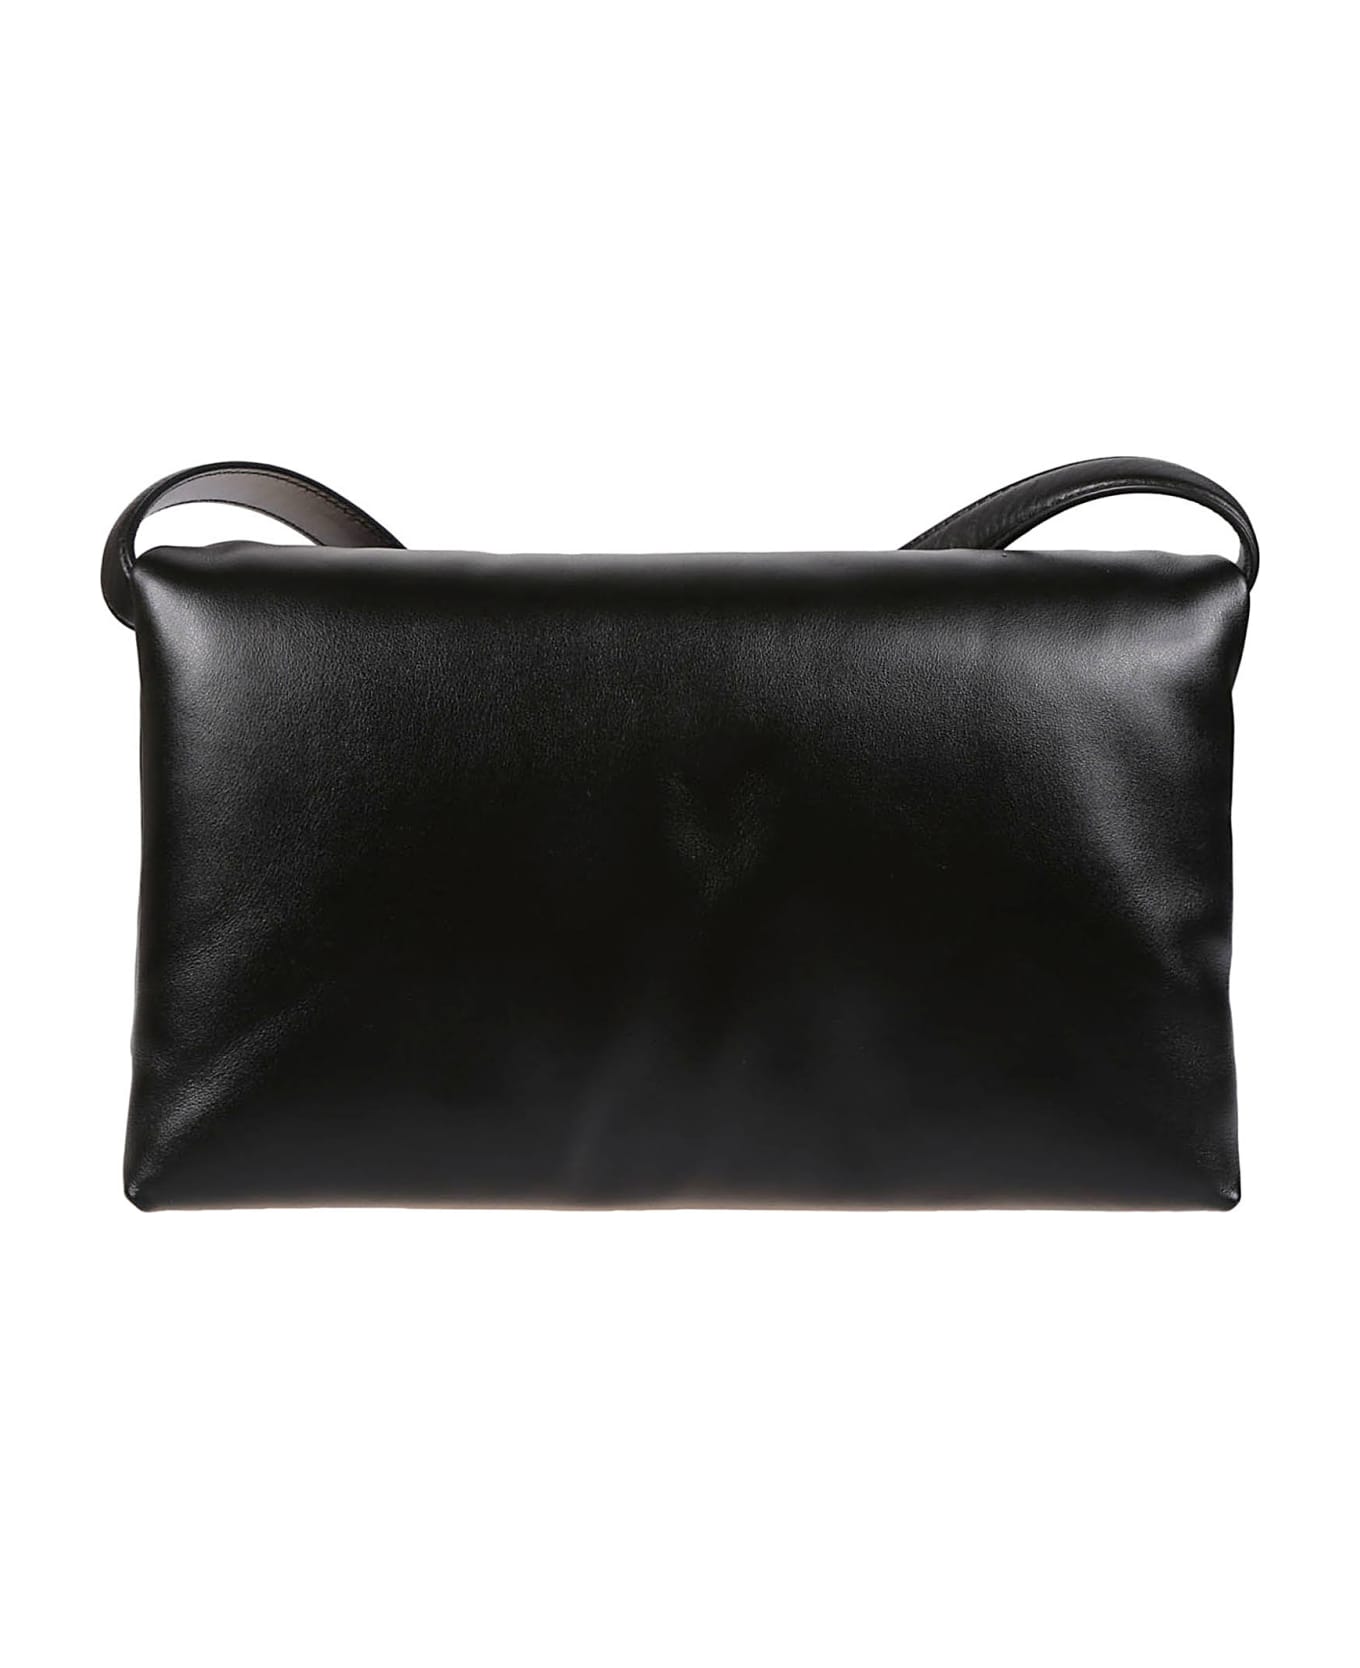 Marni Medium Prisma Bag - Black